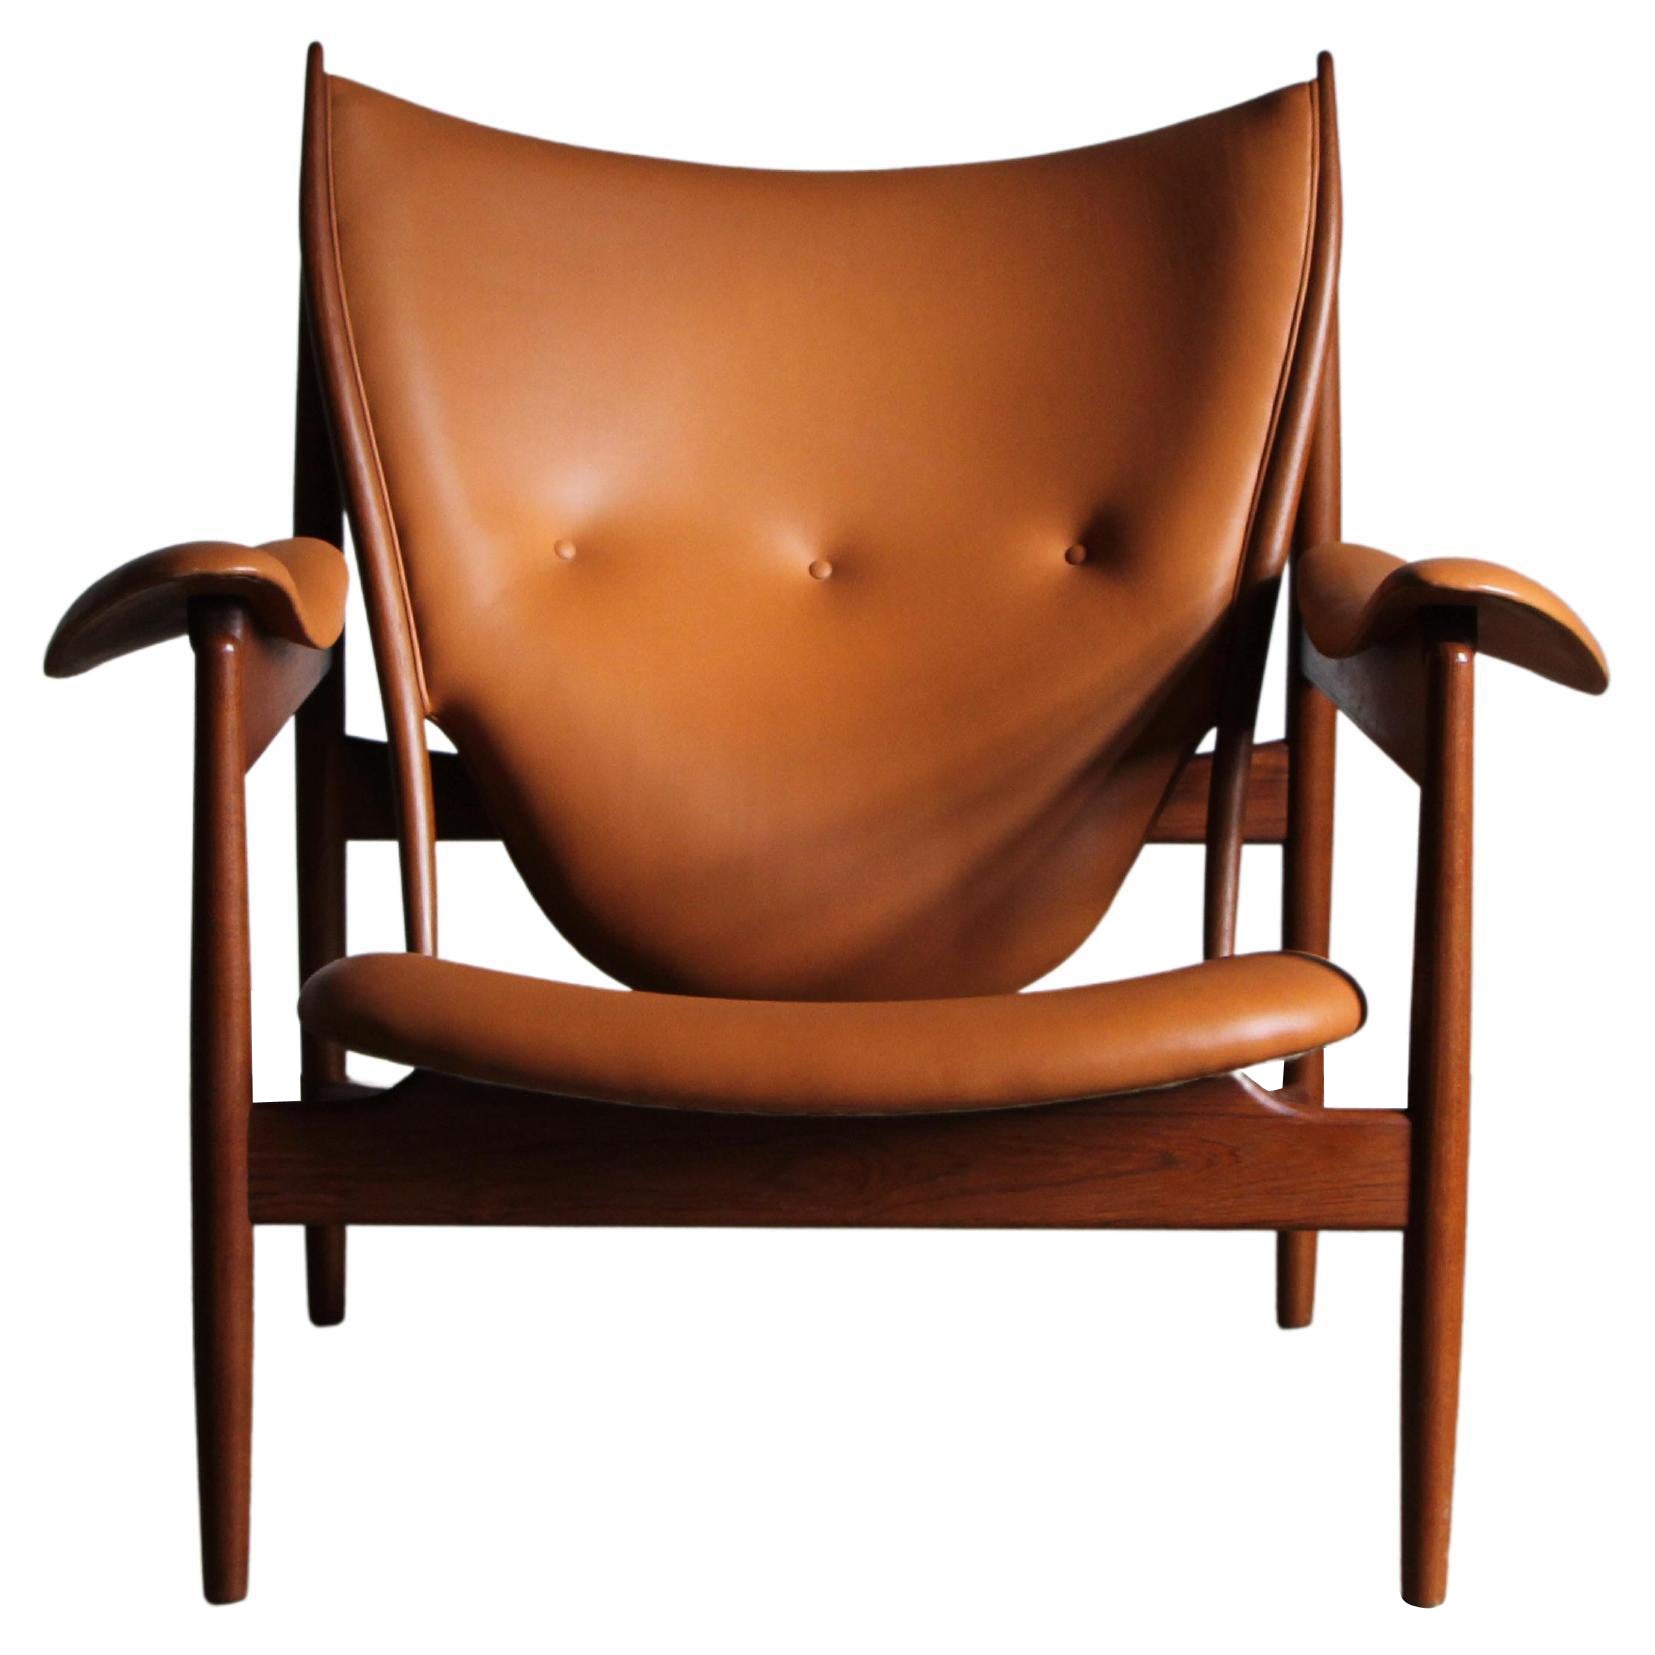 Finn Juhl "Chieftan" Chair by Niels Roth Andersen in Teak & Cognac Leather